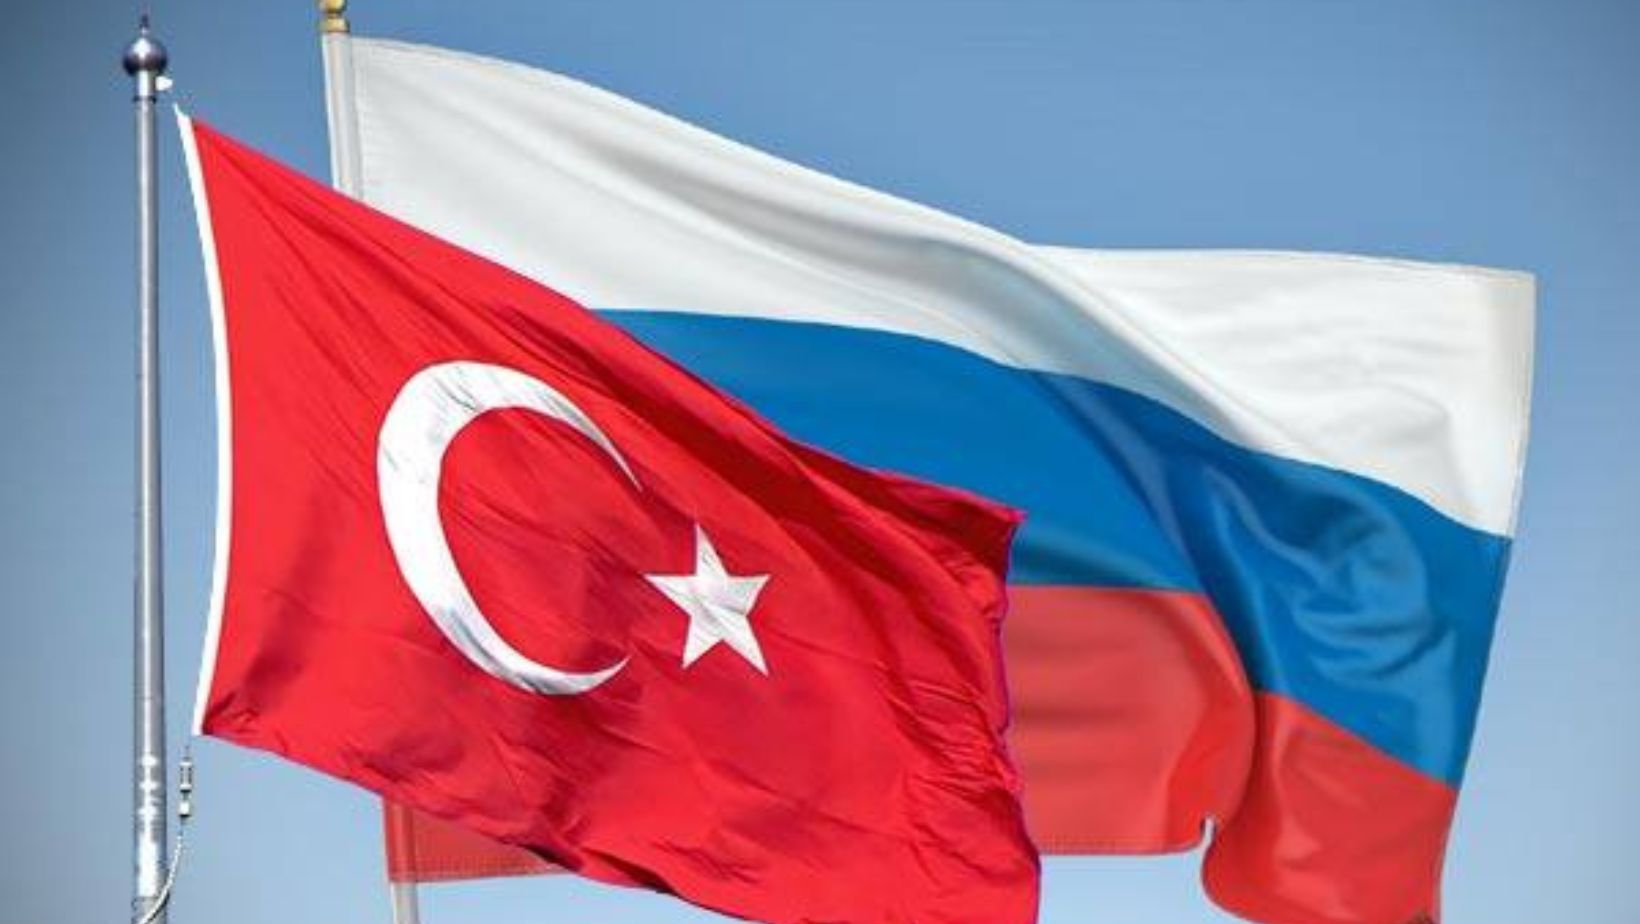 صحيفة روسية: تركيا توسع تبادل الحوالات المصرفية مع روسيا لتشمل منتجات جديدة